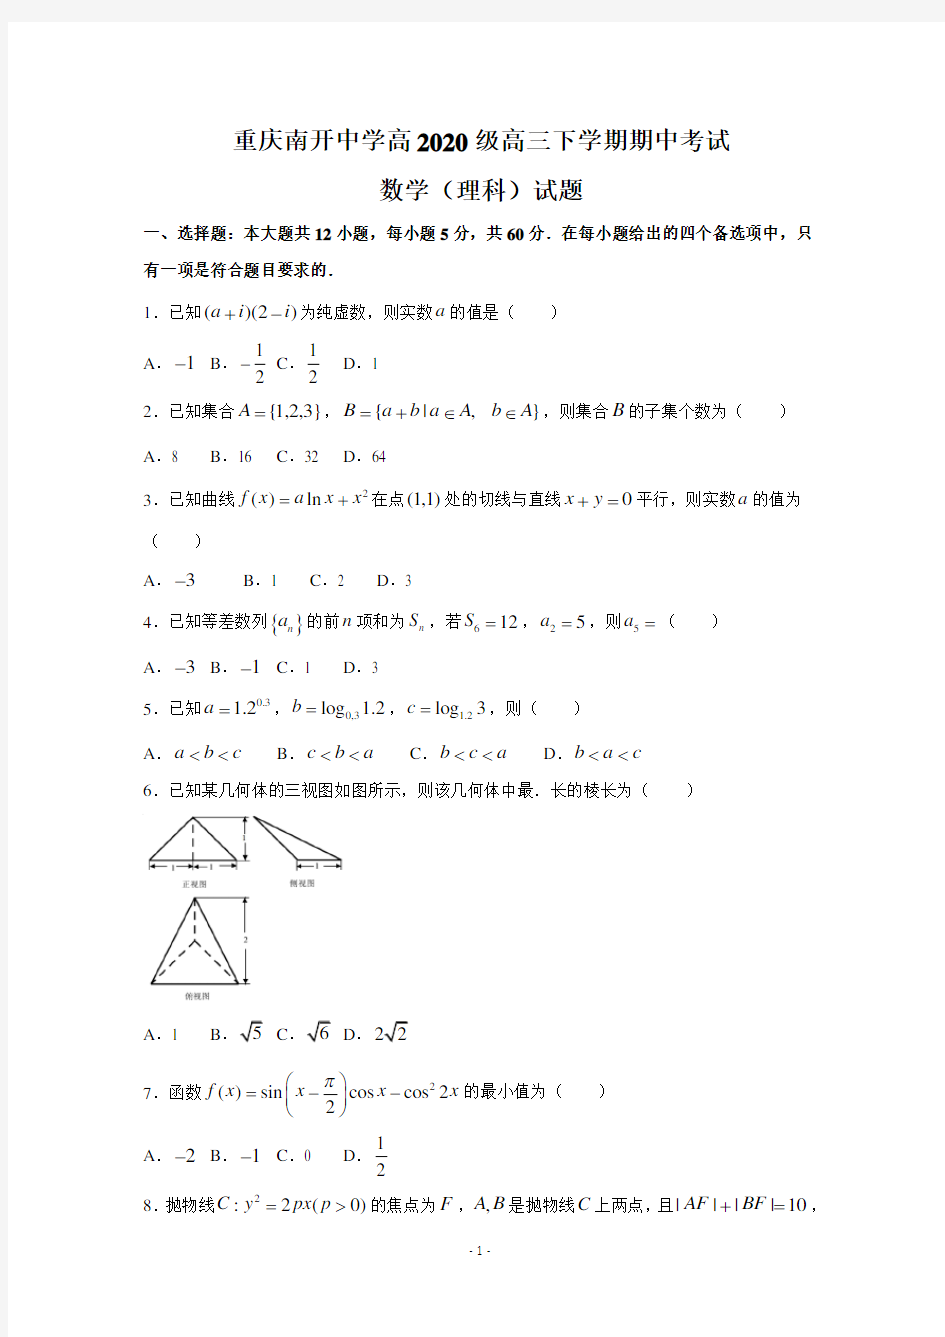 重庆市南开中学高2020级高三下学期期中考试数学(理)试题及答案